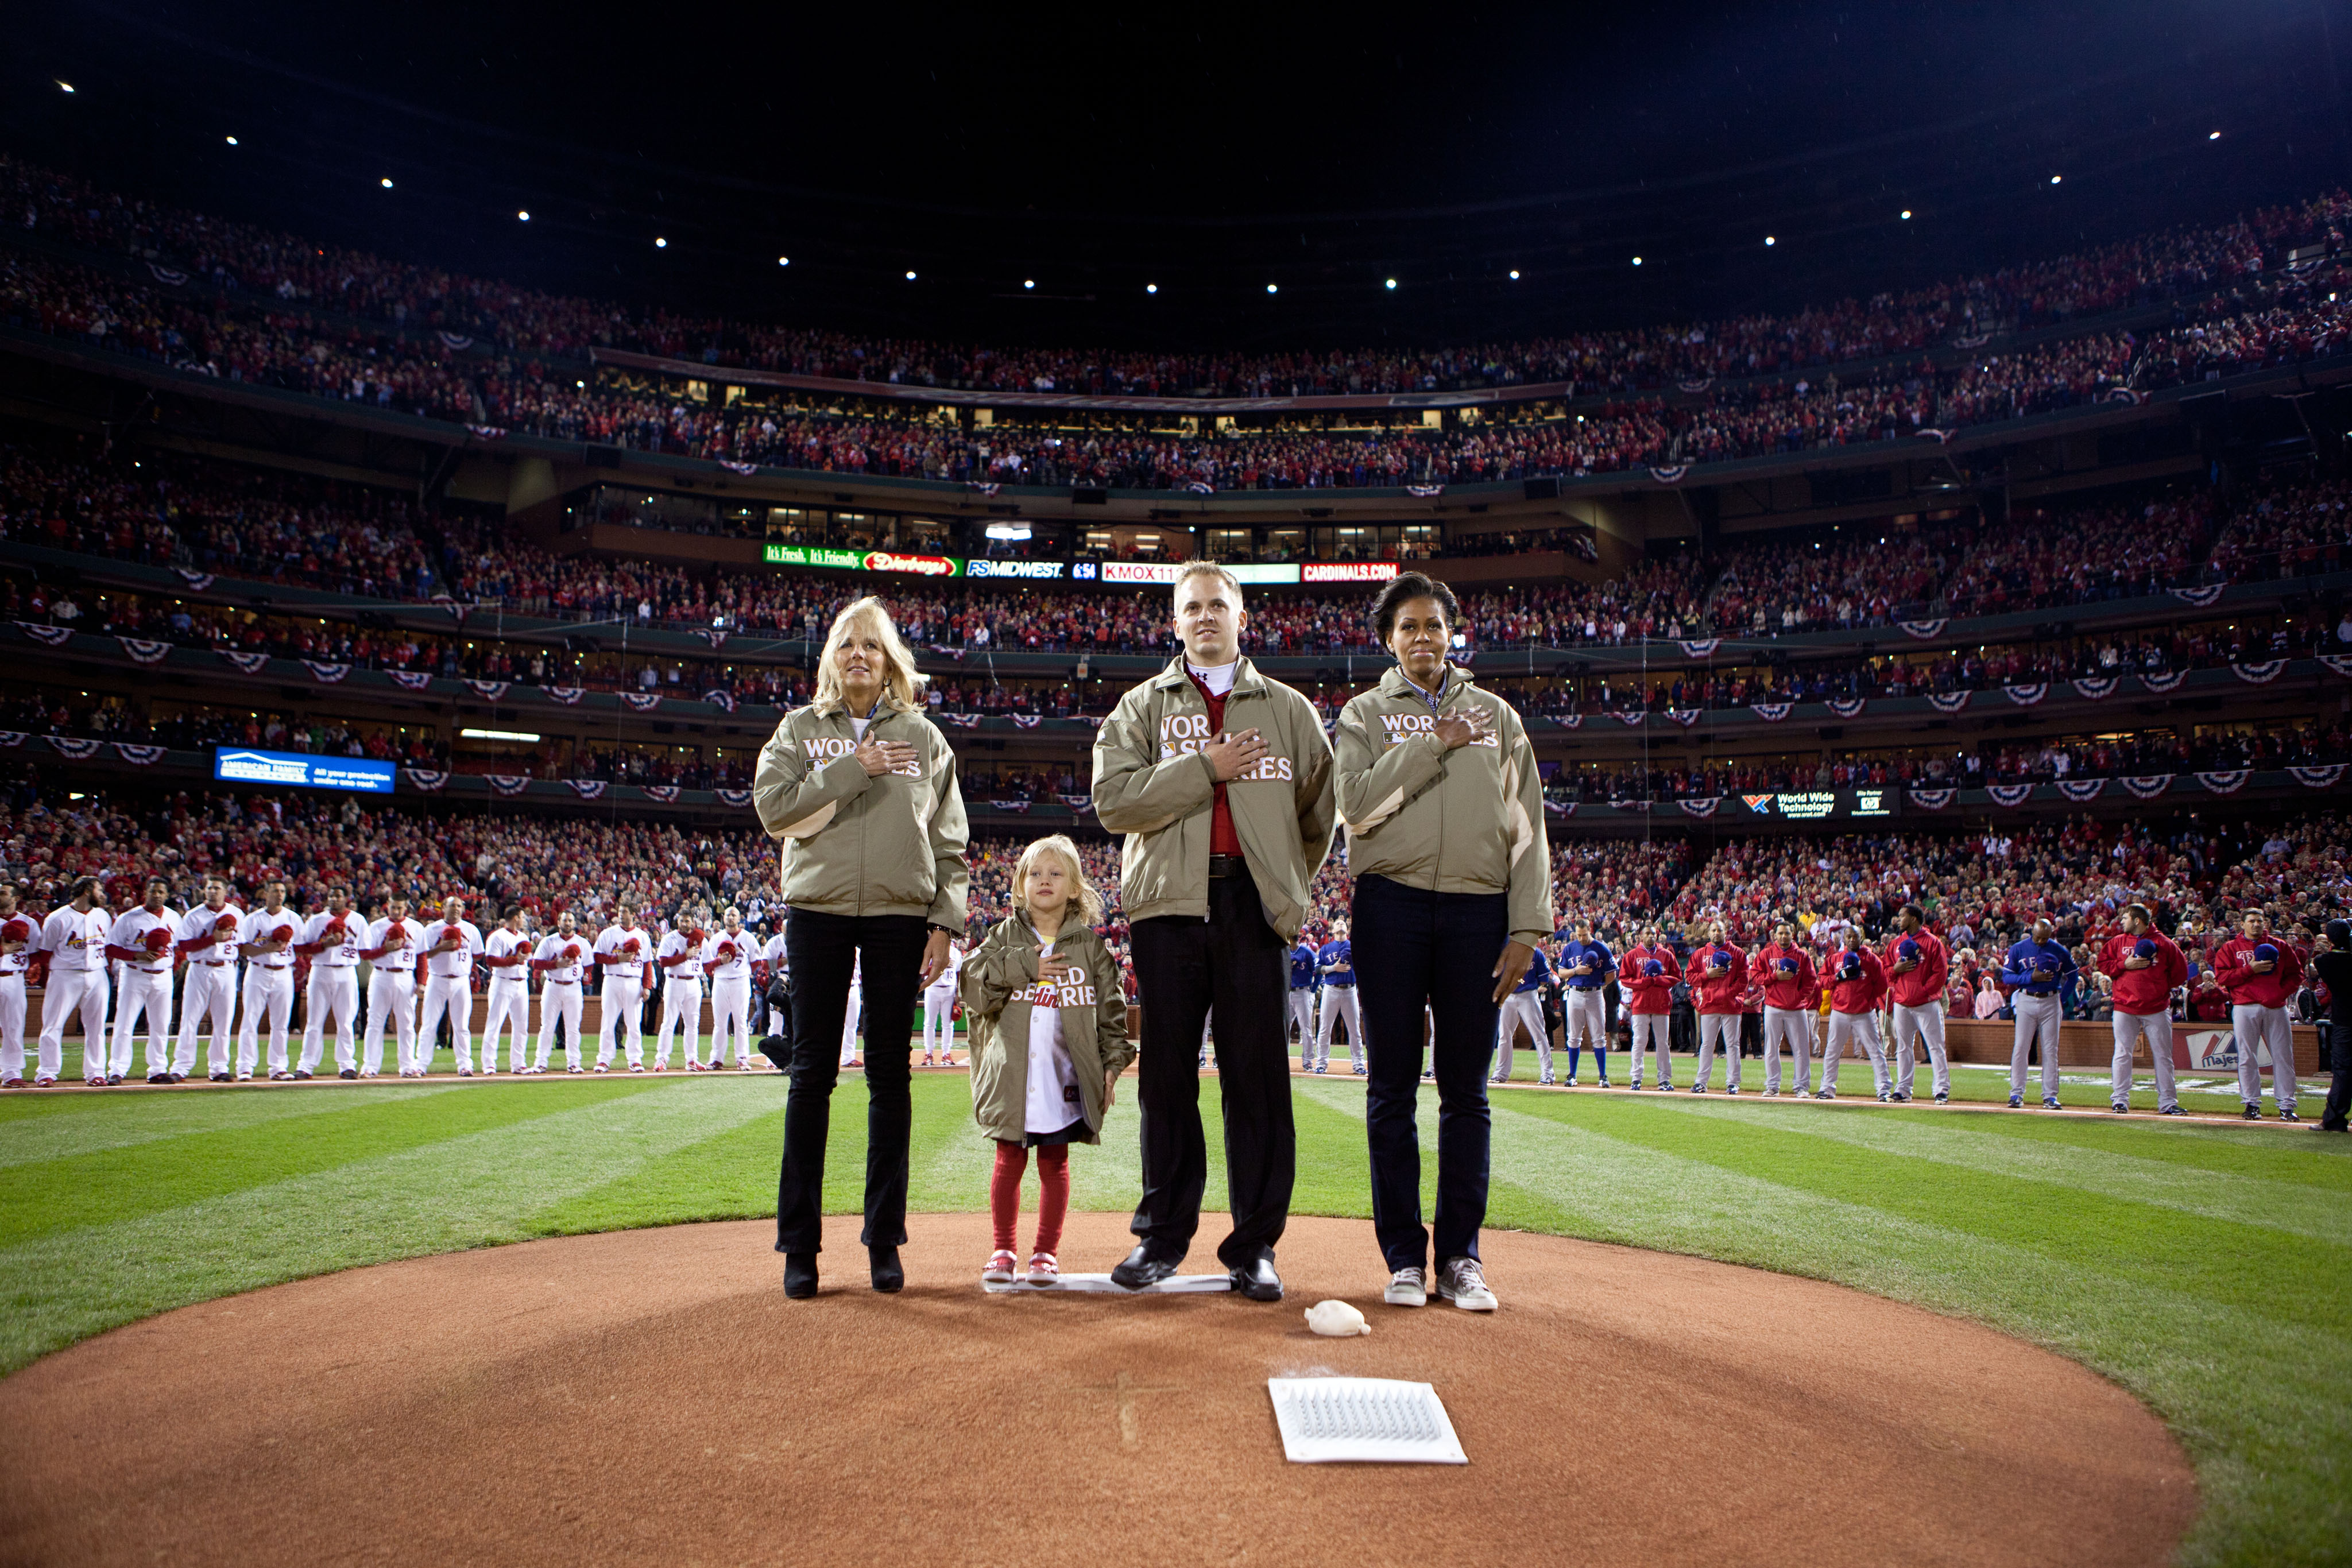 Michelle Obama Jill Biden National Anthem 2011 World Series Bush Stadium St Louis